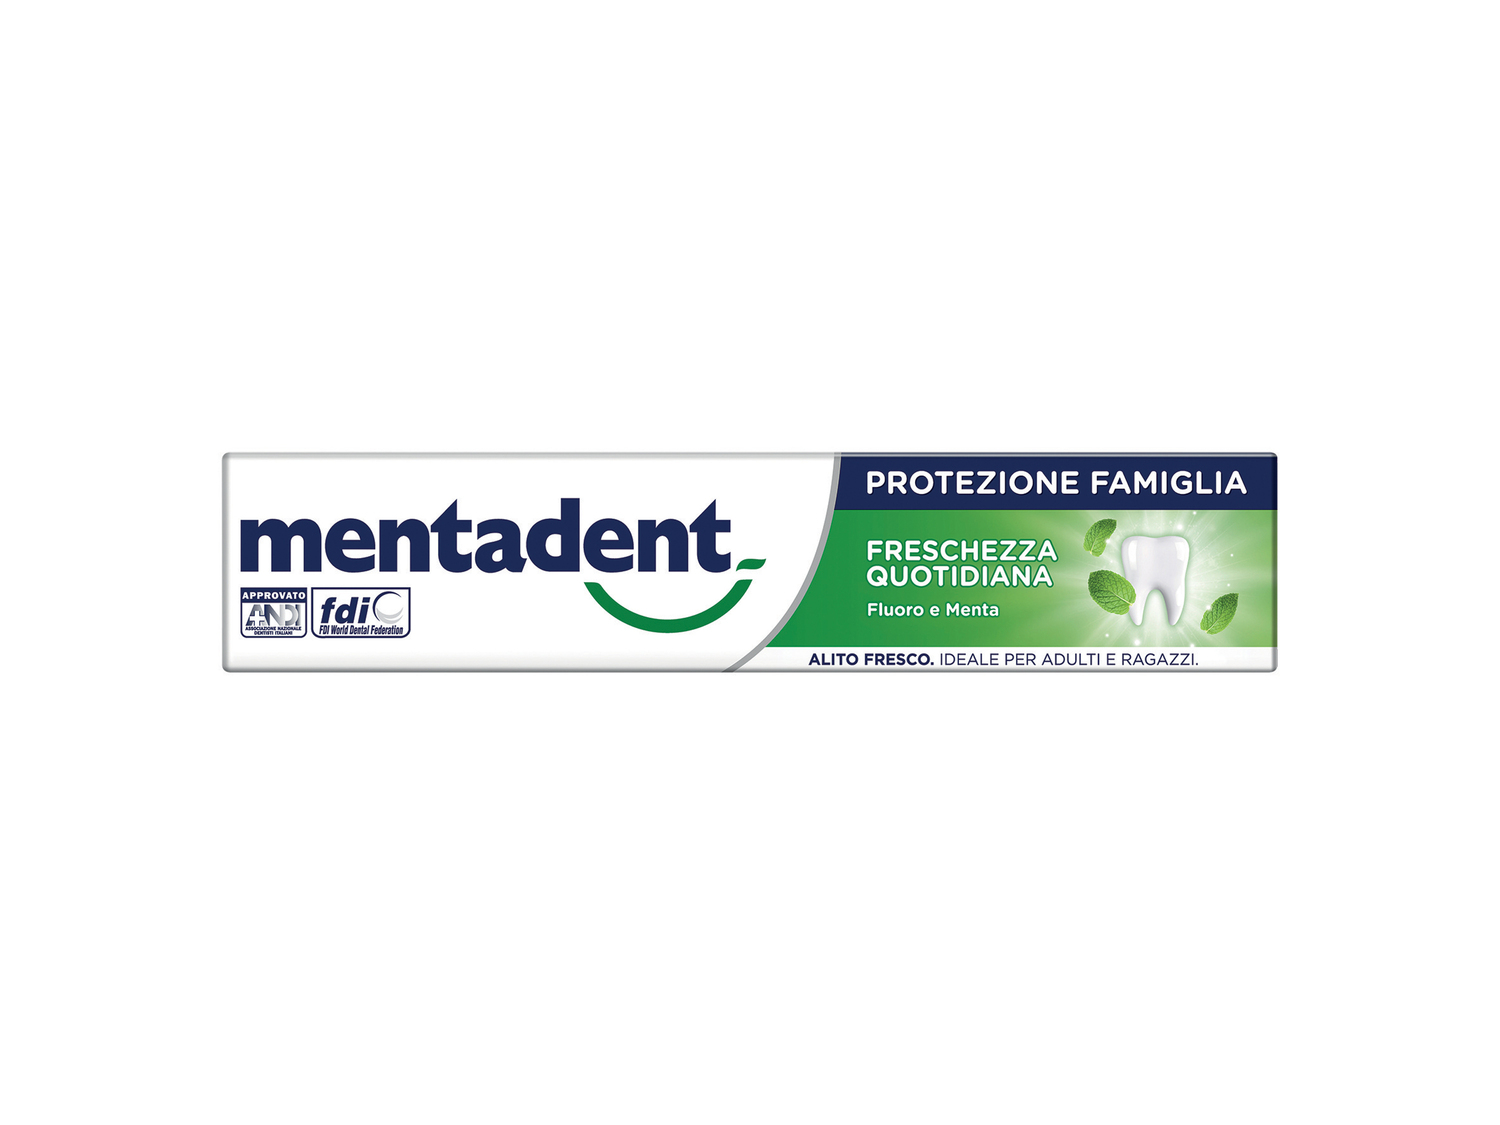 Dentifricio protezione famiglia Metadent , prezzo 1.09 €